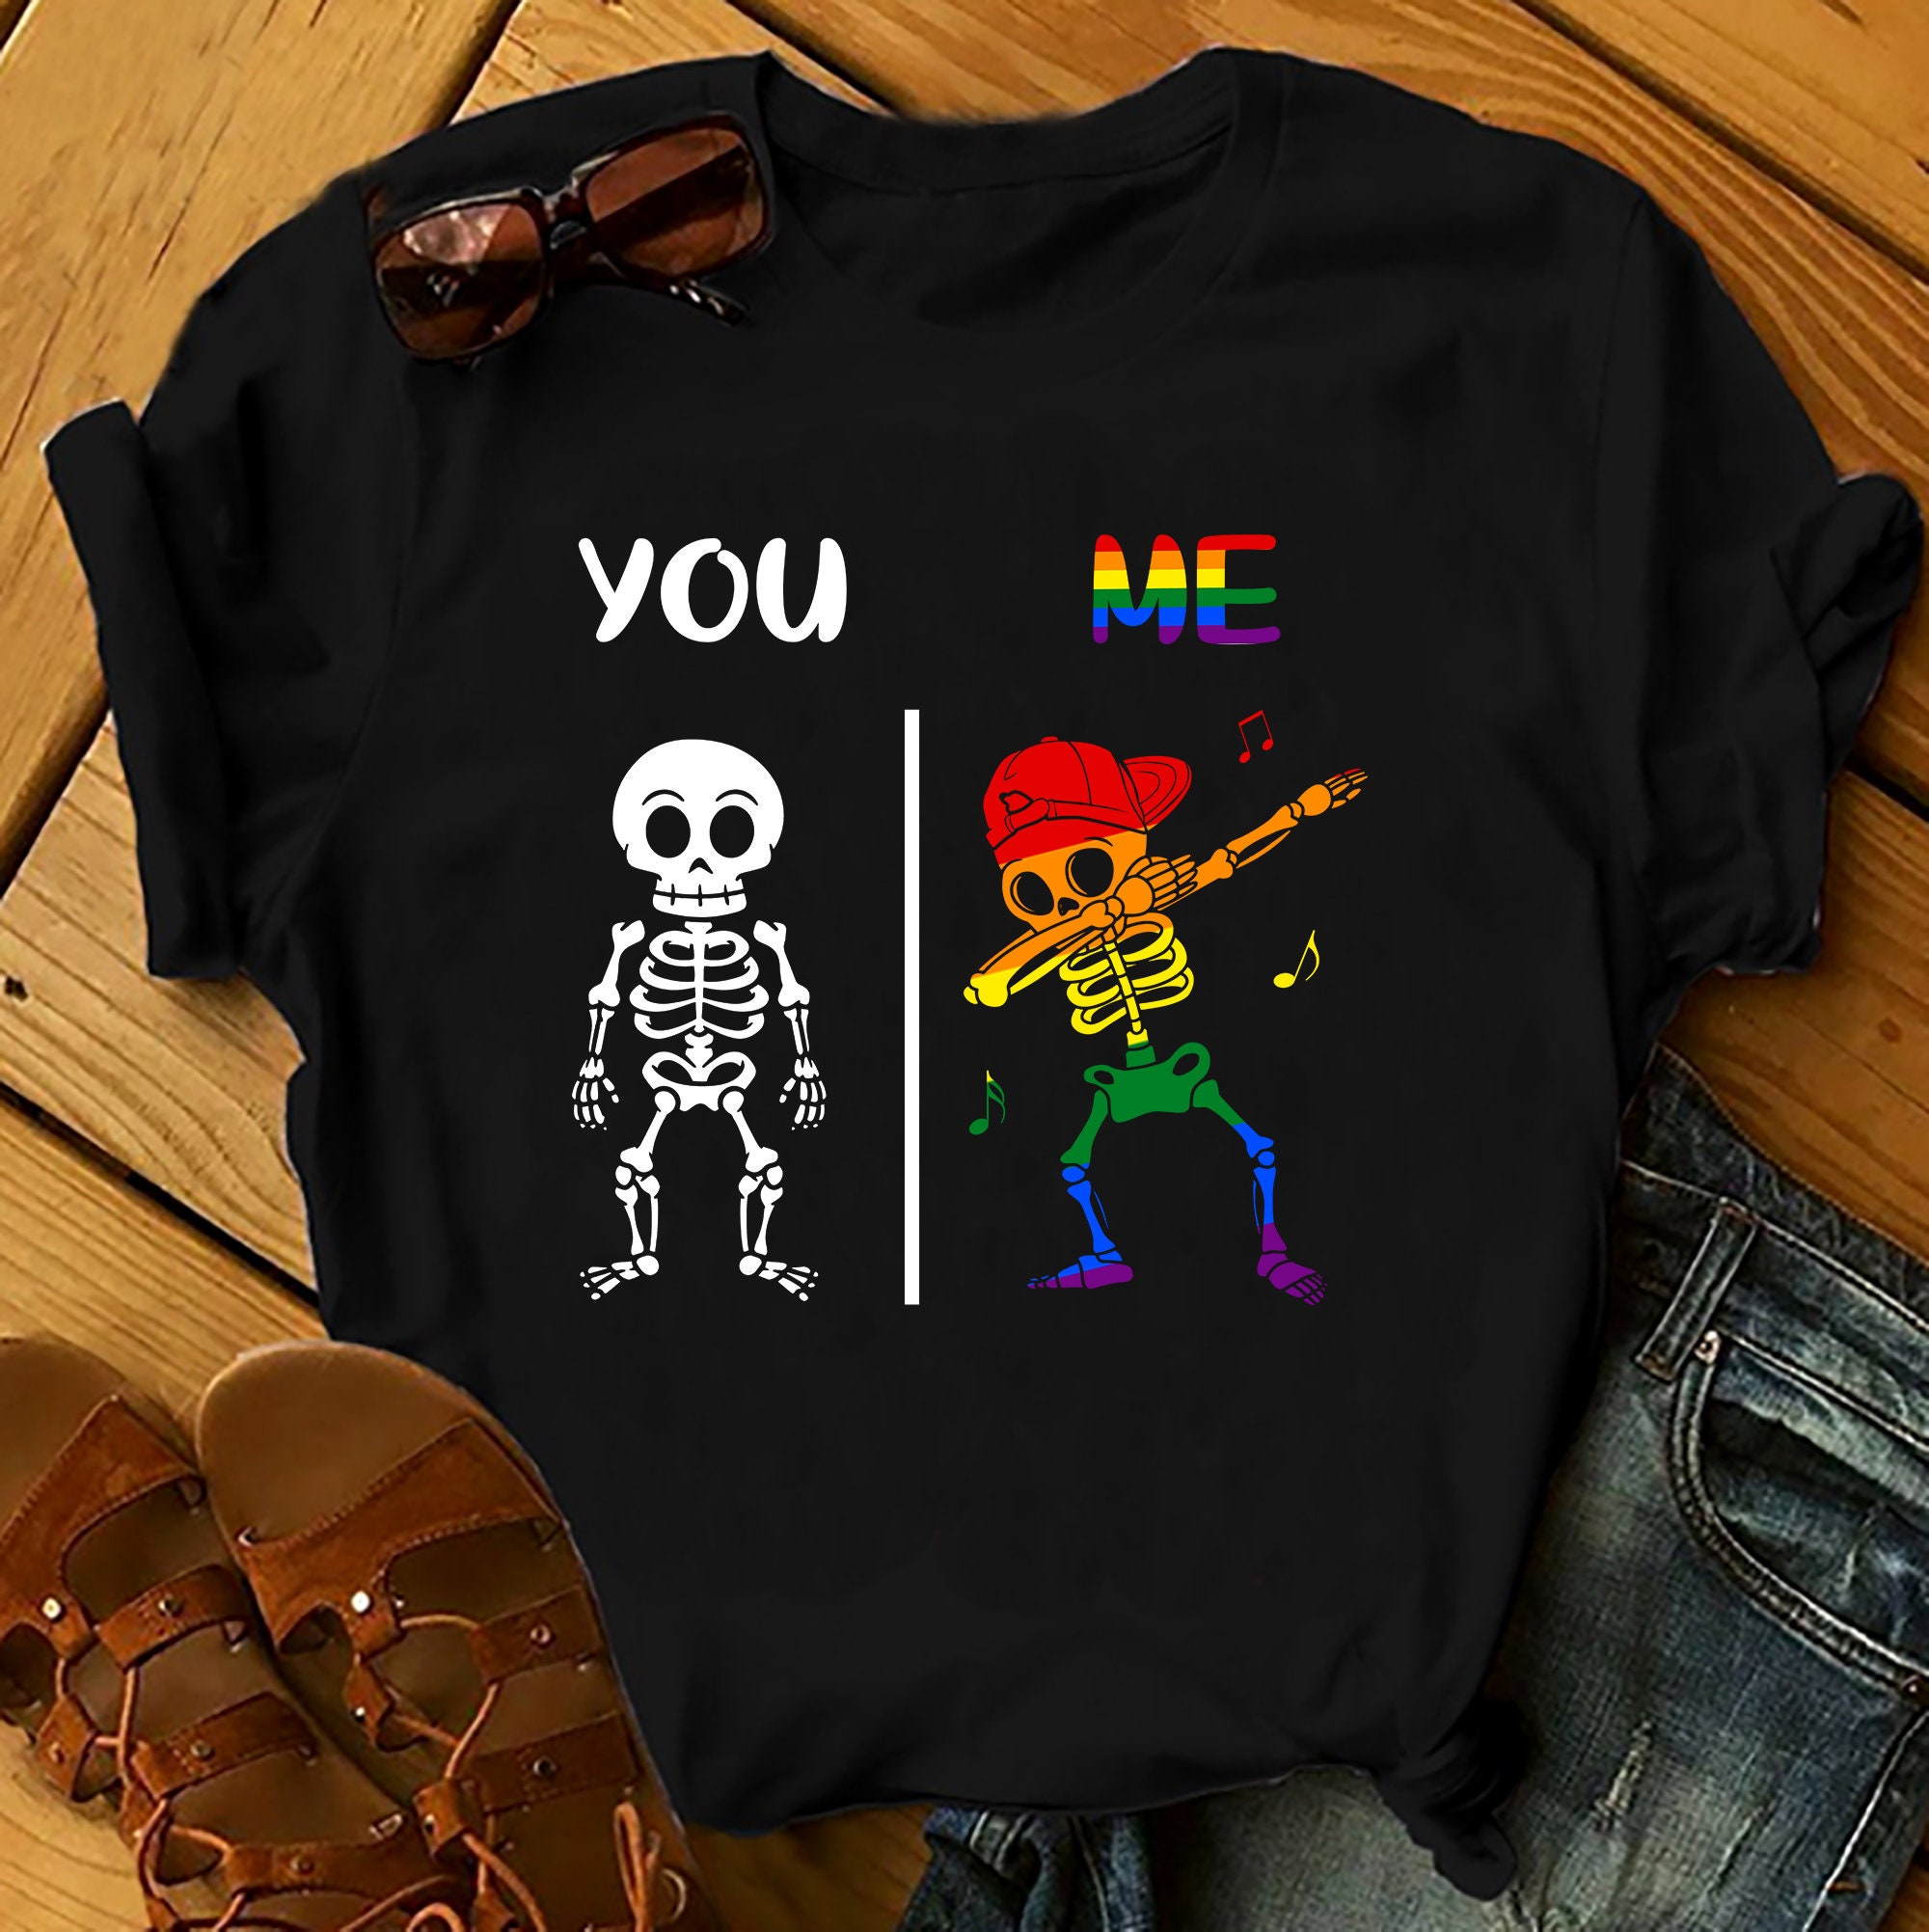 Discover You Me - LGBT Shirts Men, Woman Birthday T Shirts, Summer Tops, Beach T Shirts